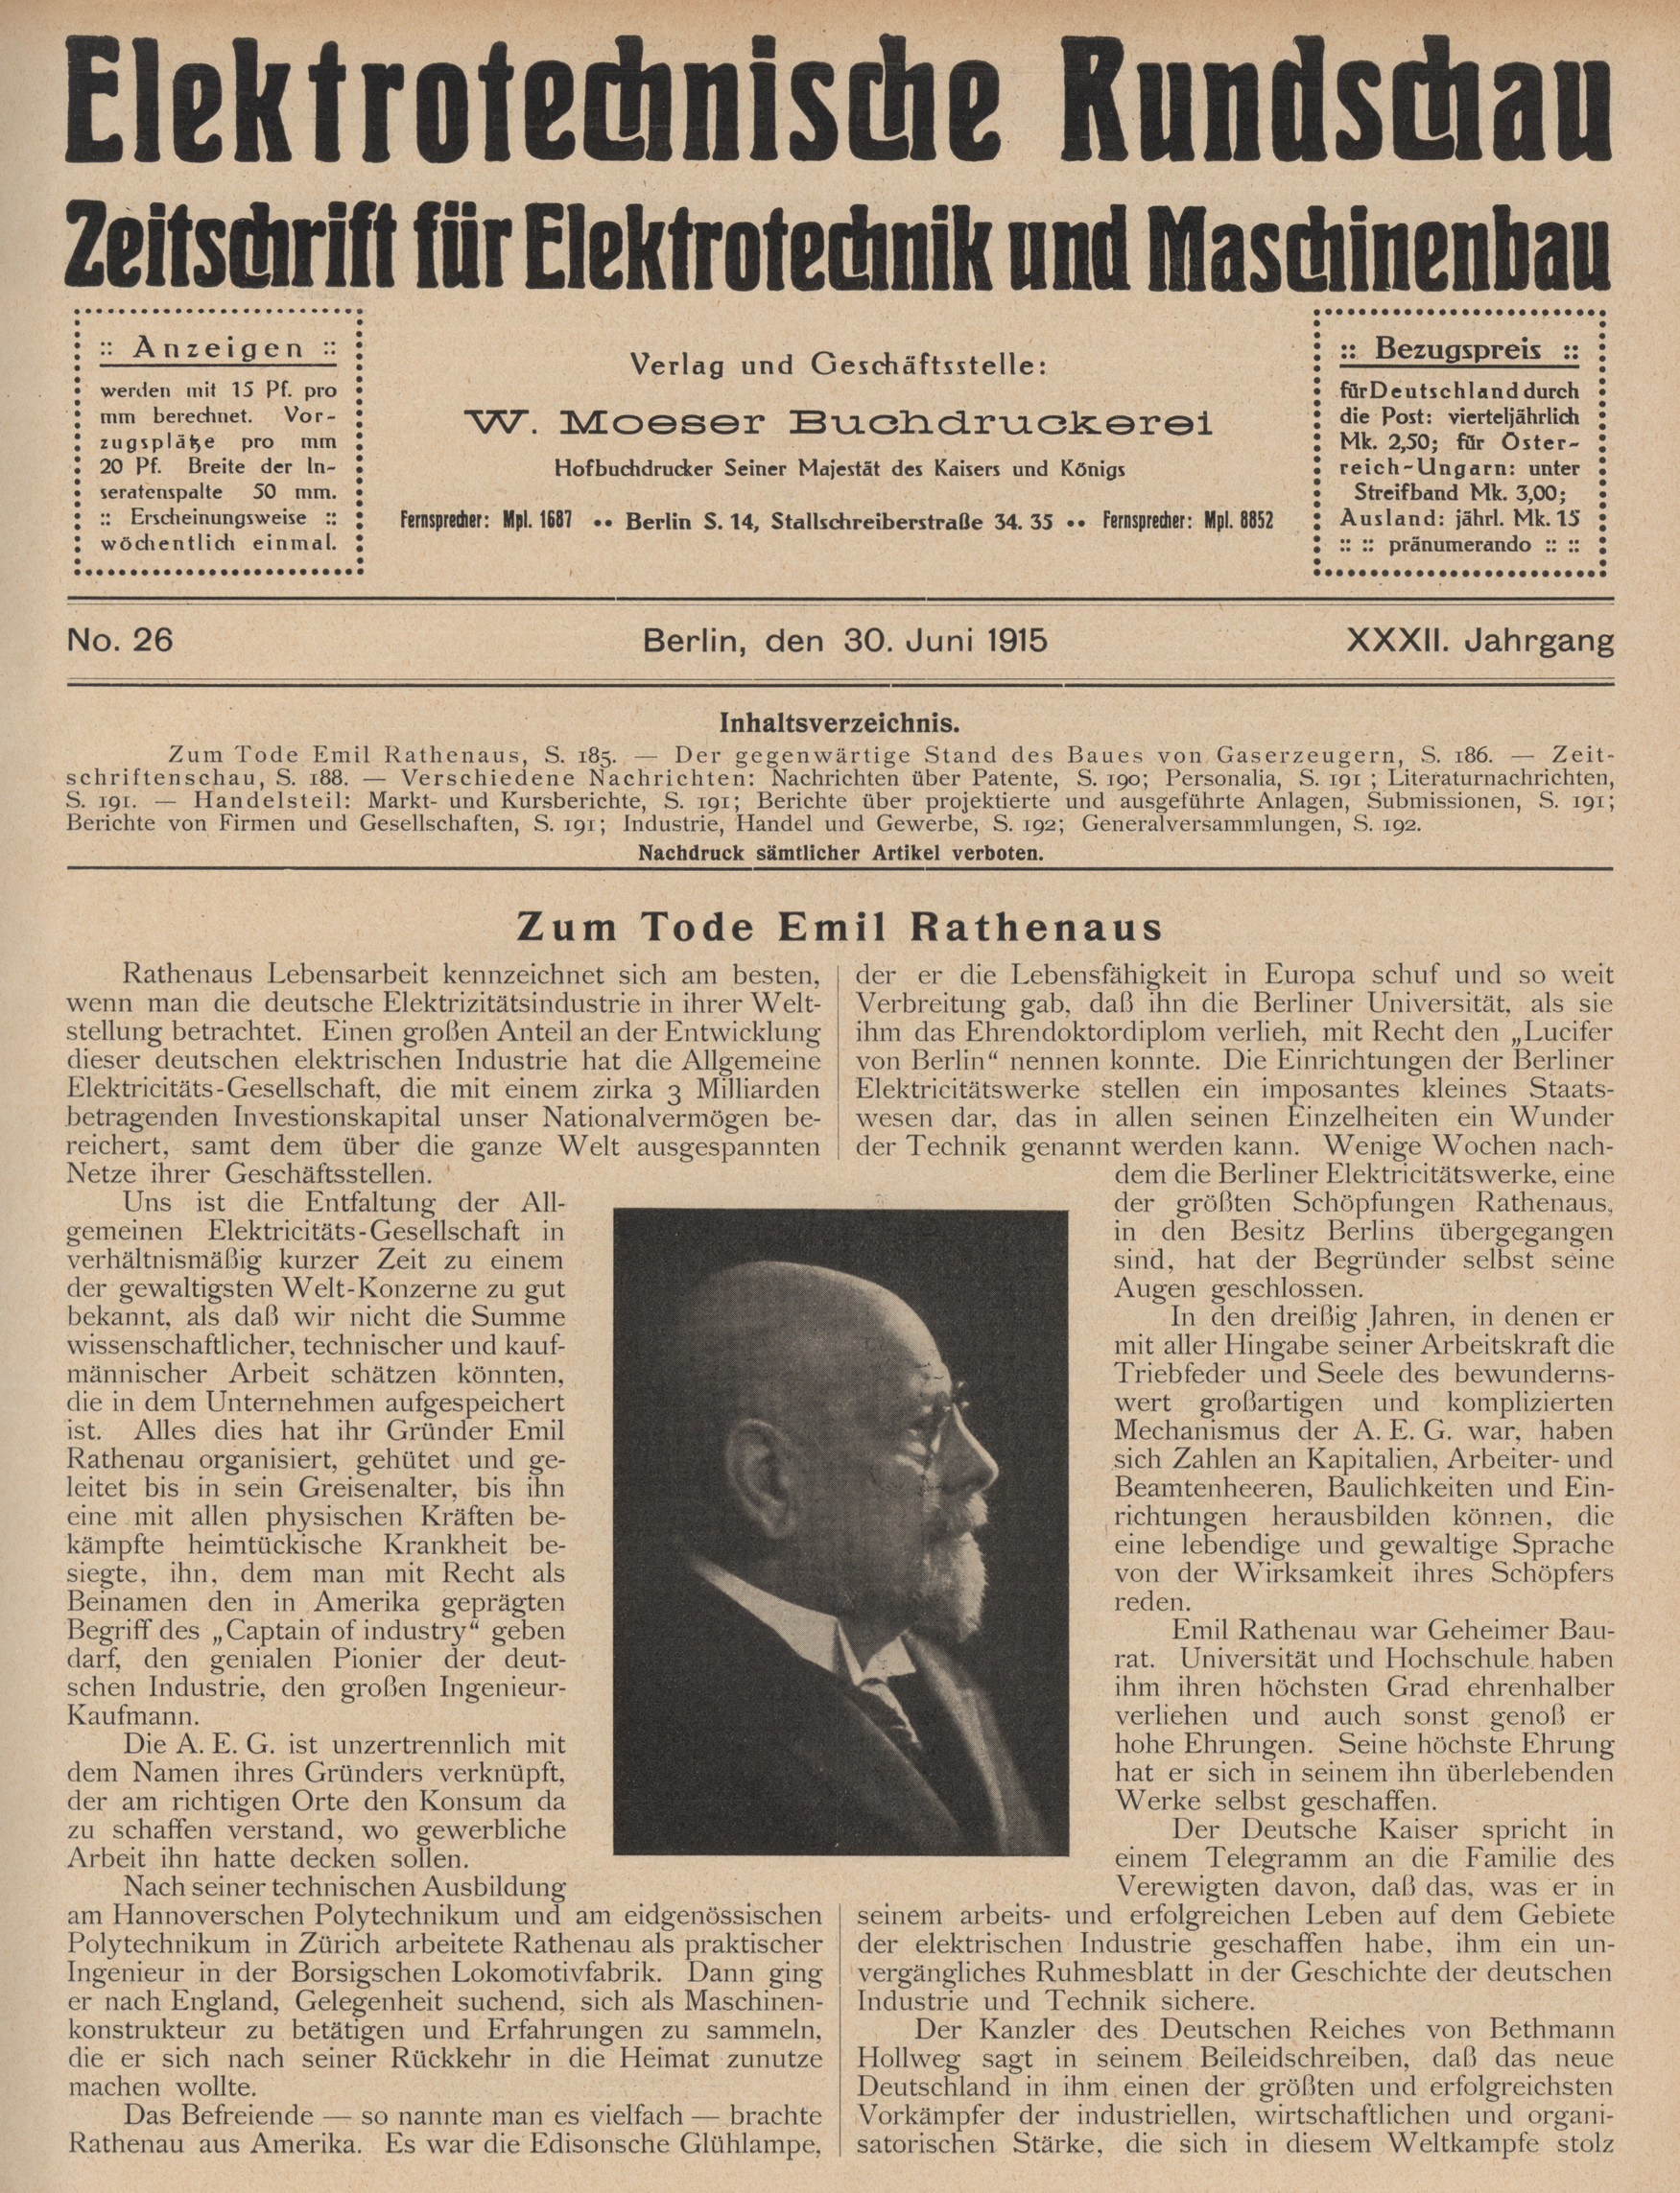 Elektrotechnische Rundschau : Zeitschrift für Elektrotechnik und Maschinenbau + Polytechnische Rundschau, No. 26, XXXII. Jahrgang